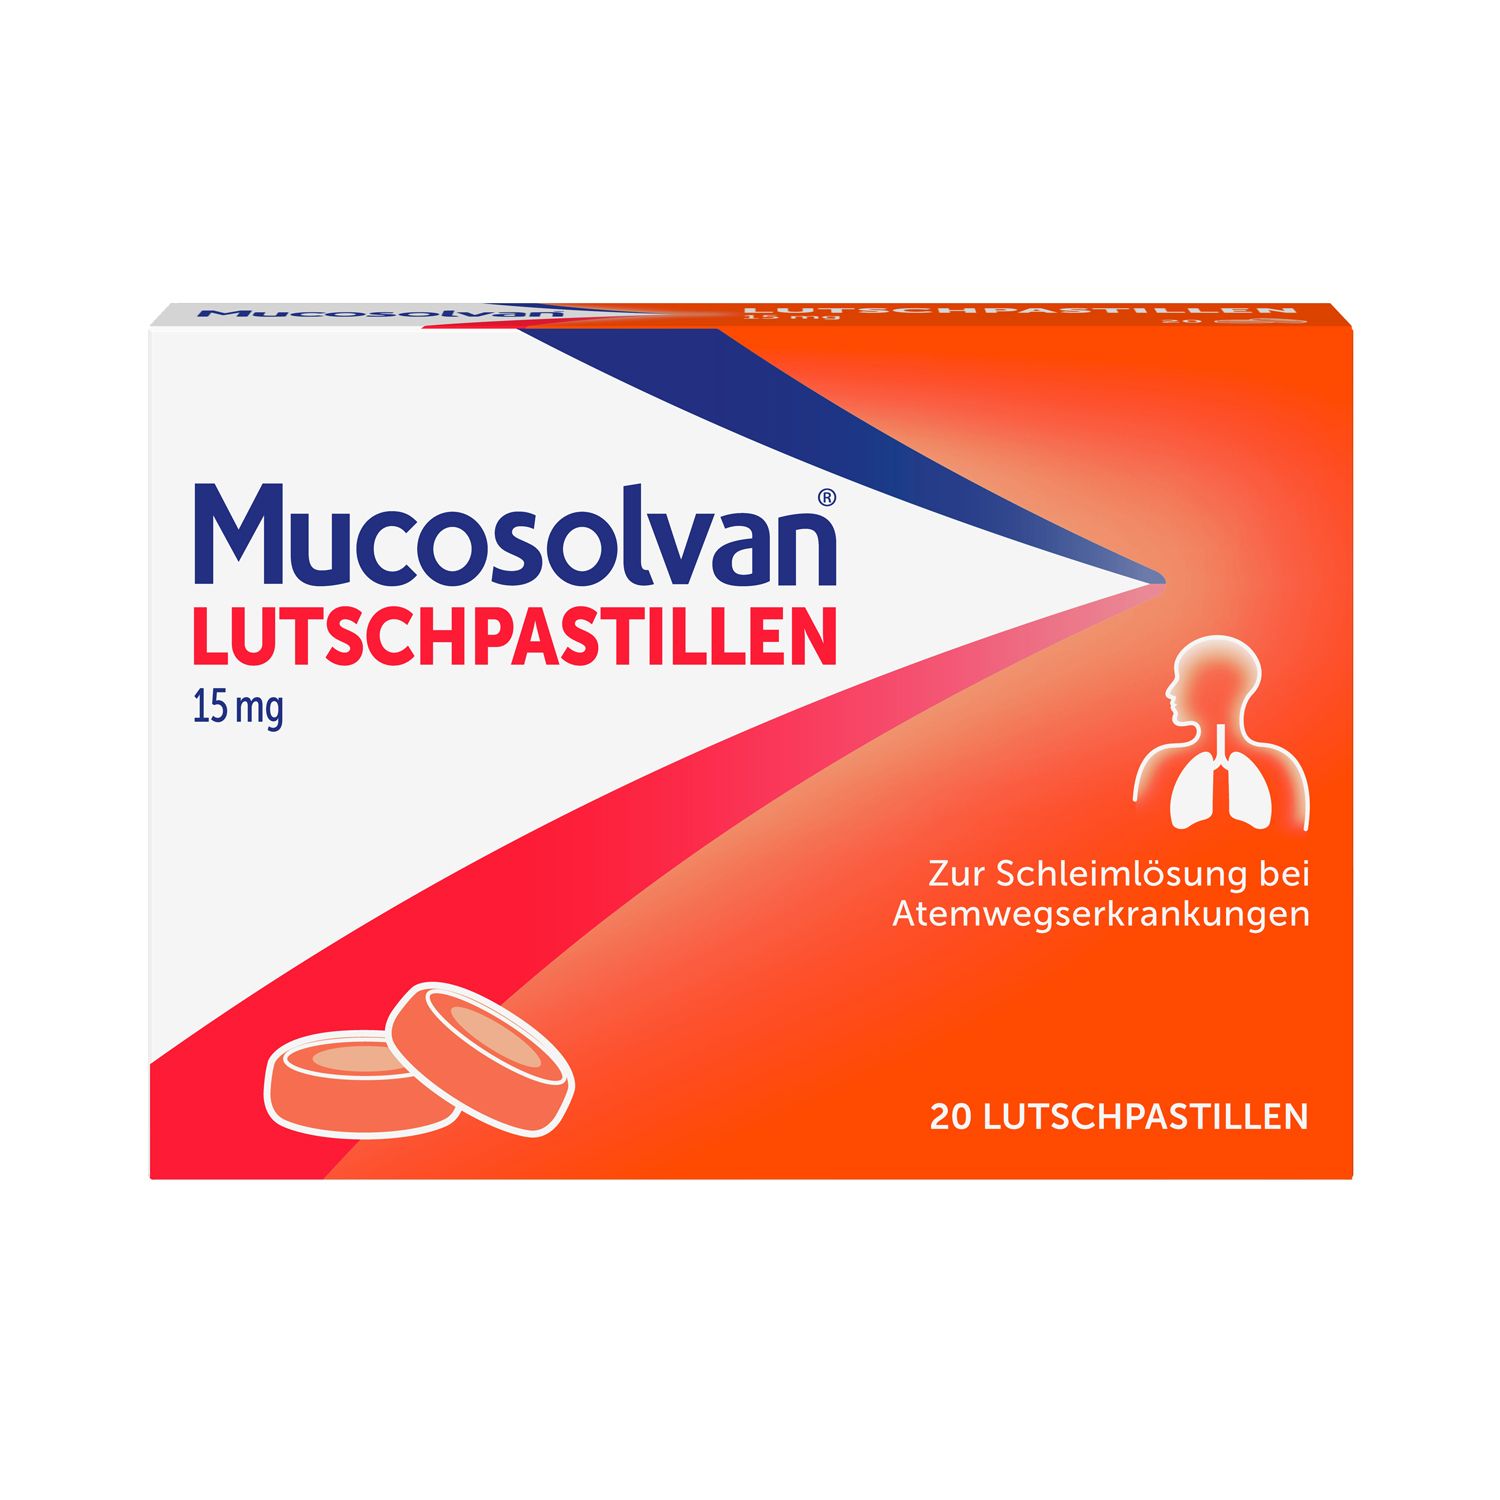 Mucosolvan® Lutschpastillen